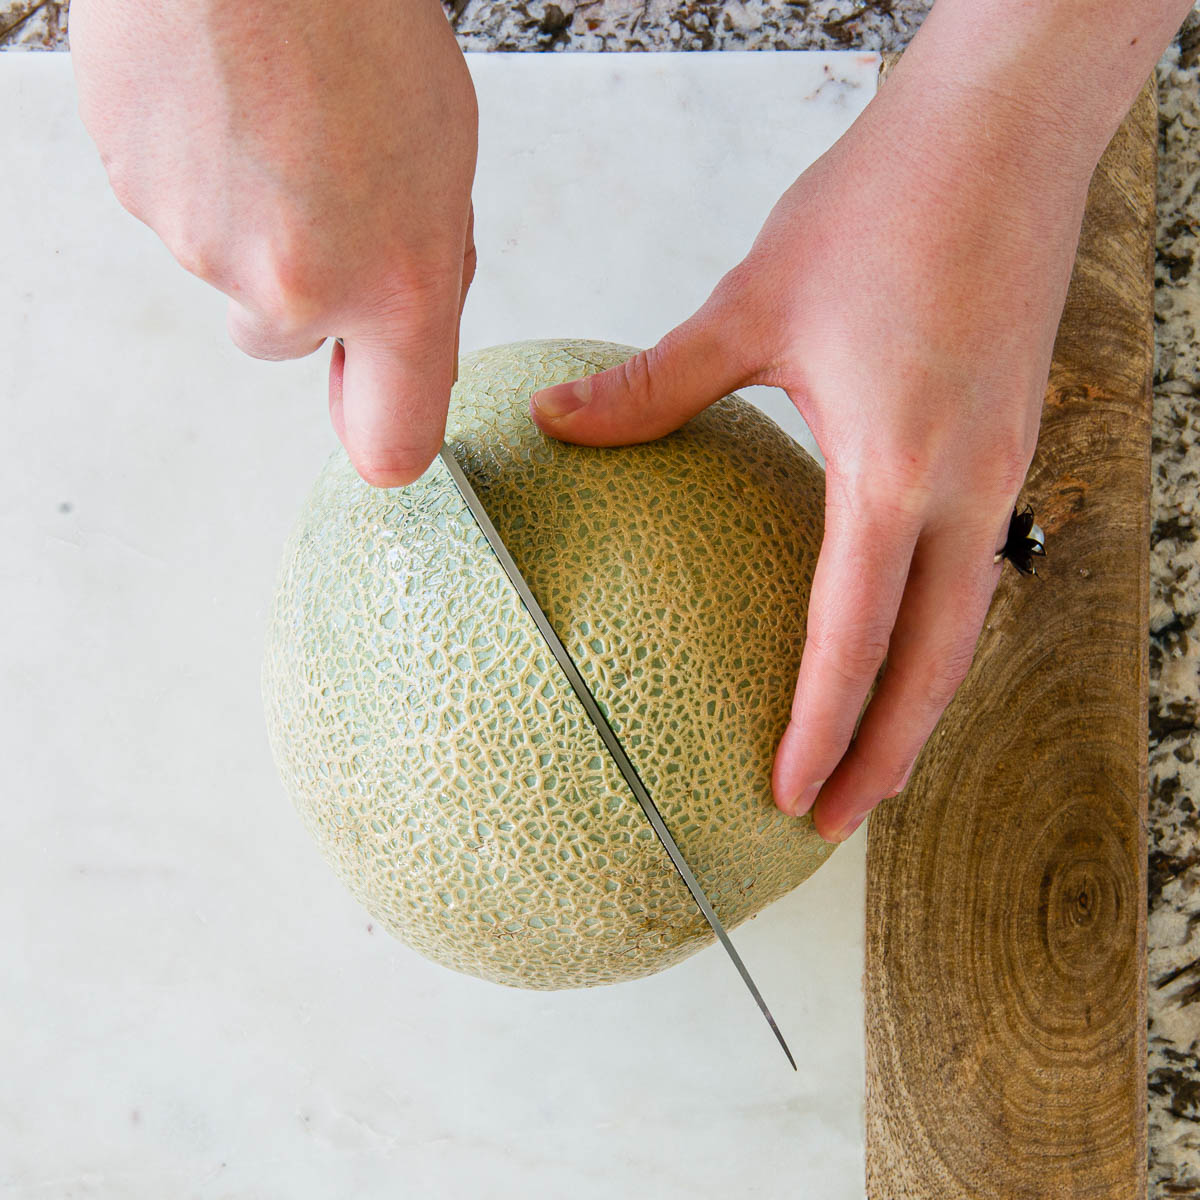 tagliare a metà un melone intero con un coltello da chef.